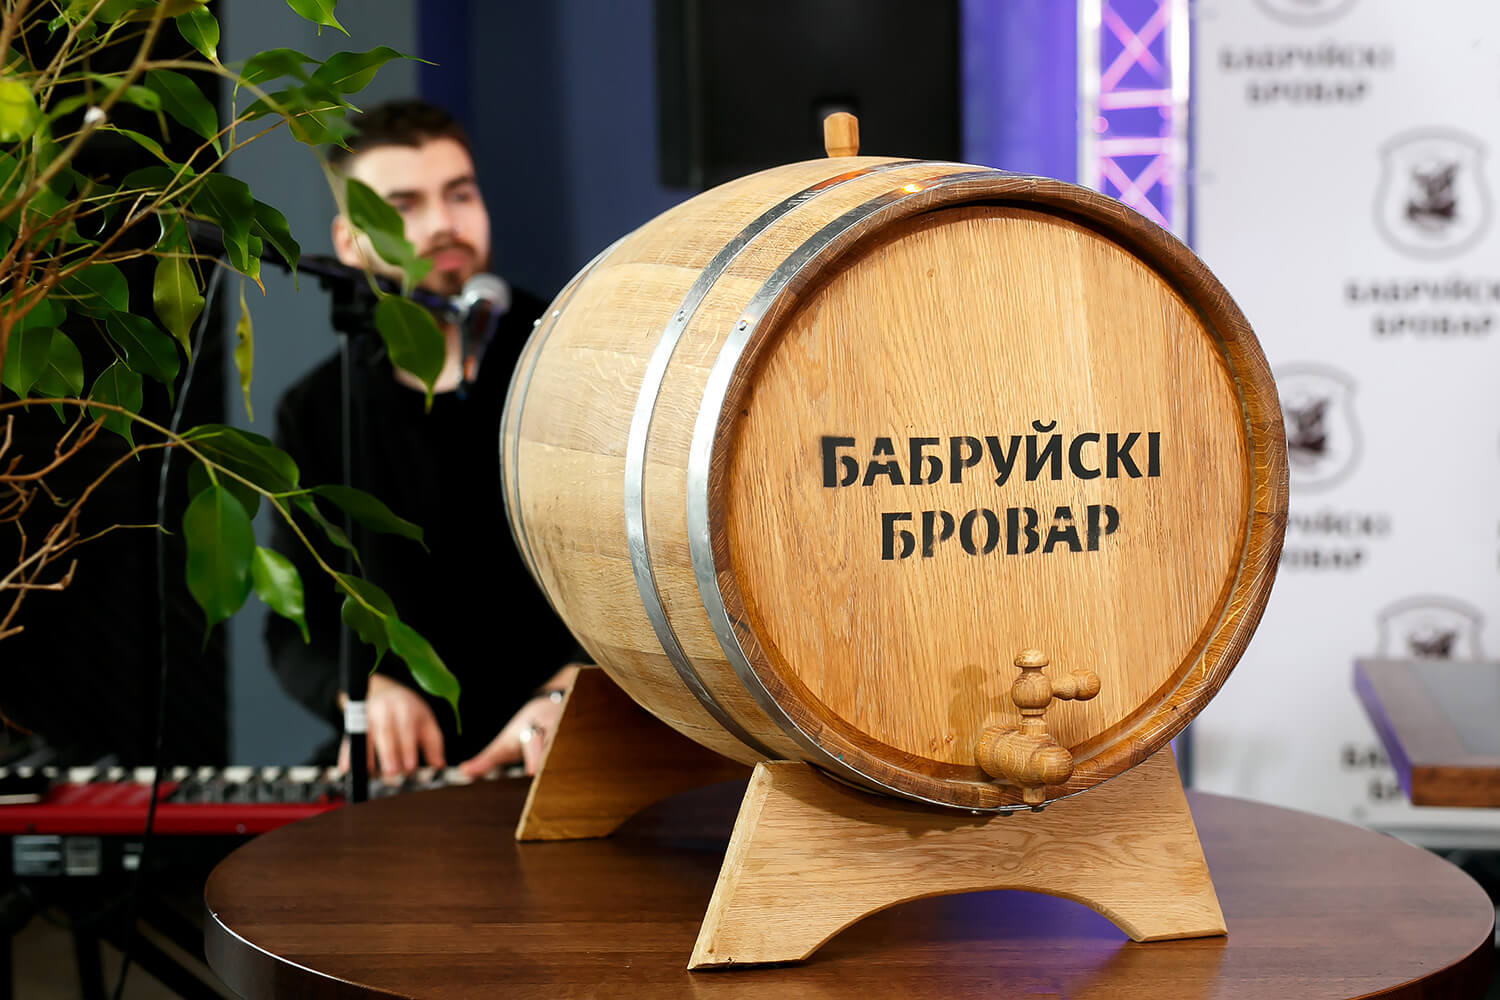 «Бабруйскі бровар»: «Мы хотим завоевать сердца белорусов и варить годное пиво»